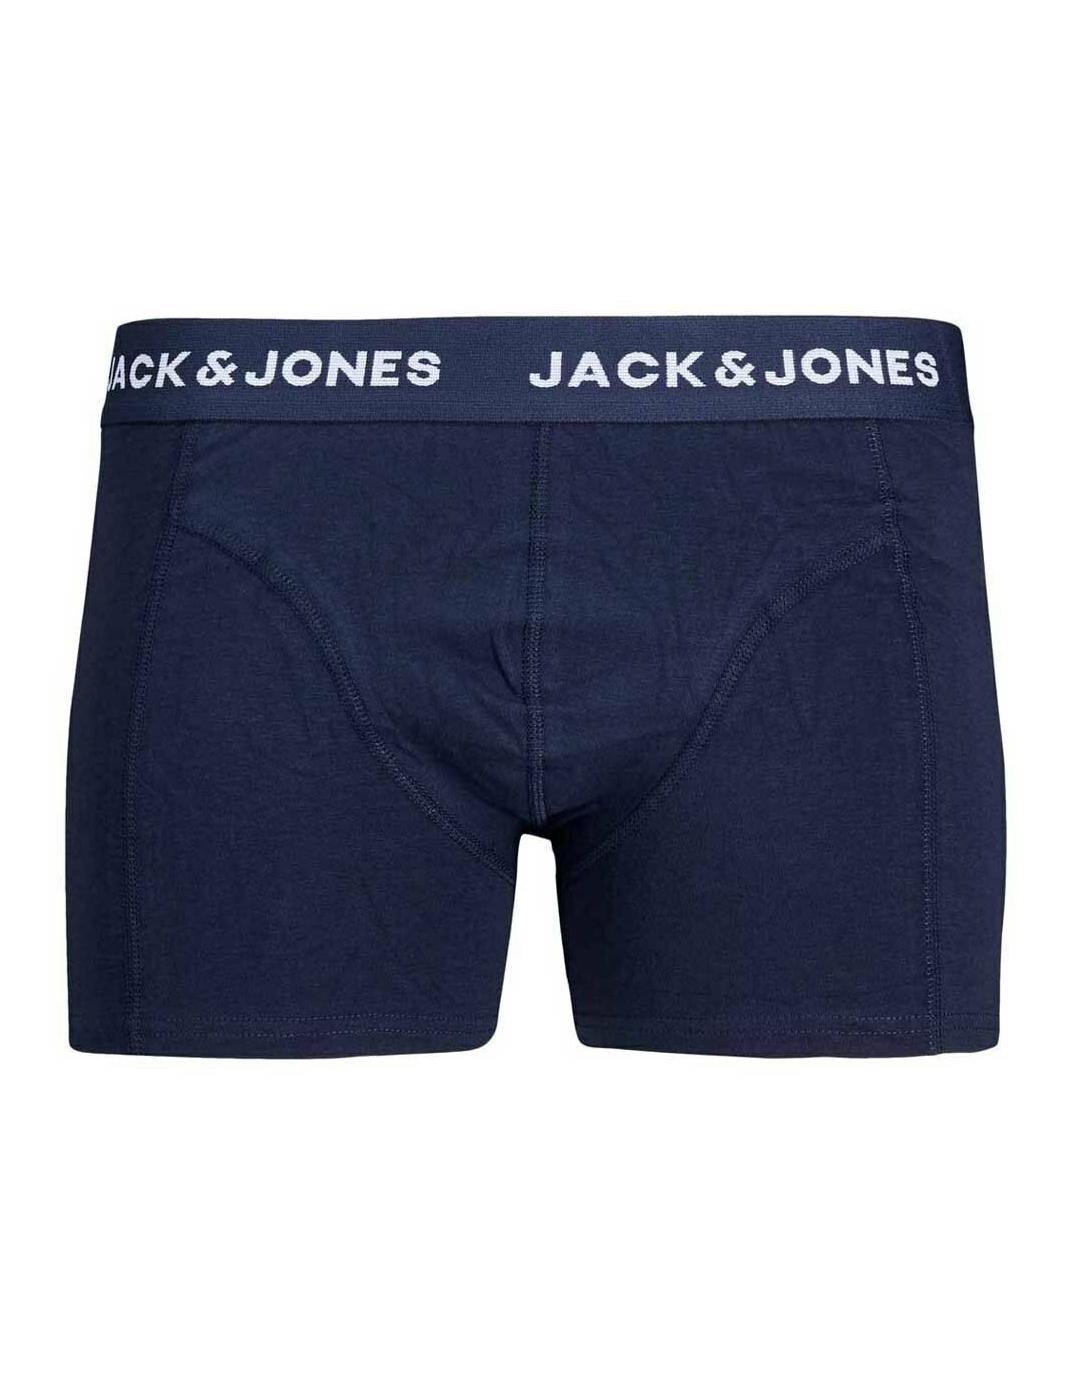 Intimo Jack&Jones pack5 Noos para hombre -y